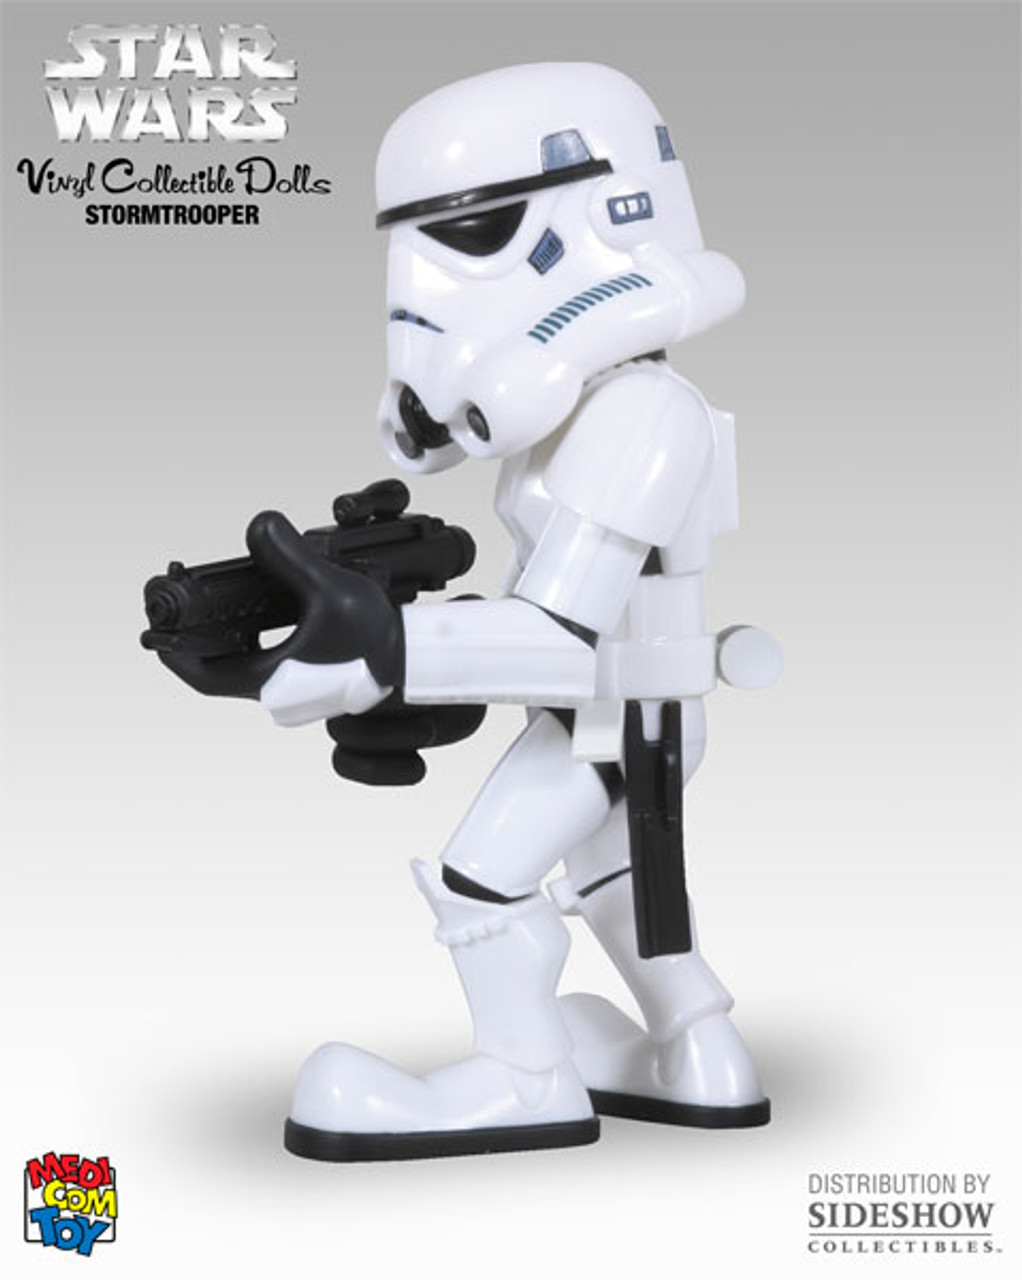 Medicom Star Wars Stormtrooper VCD